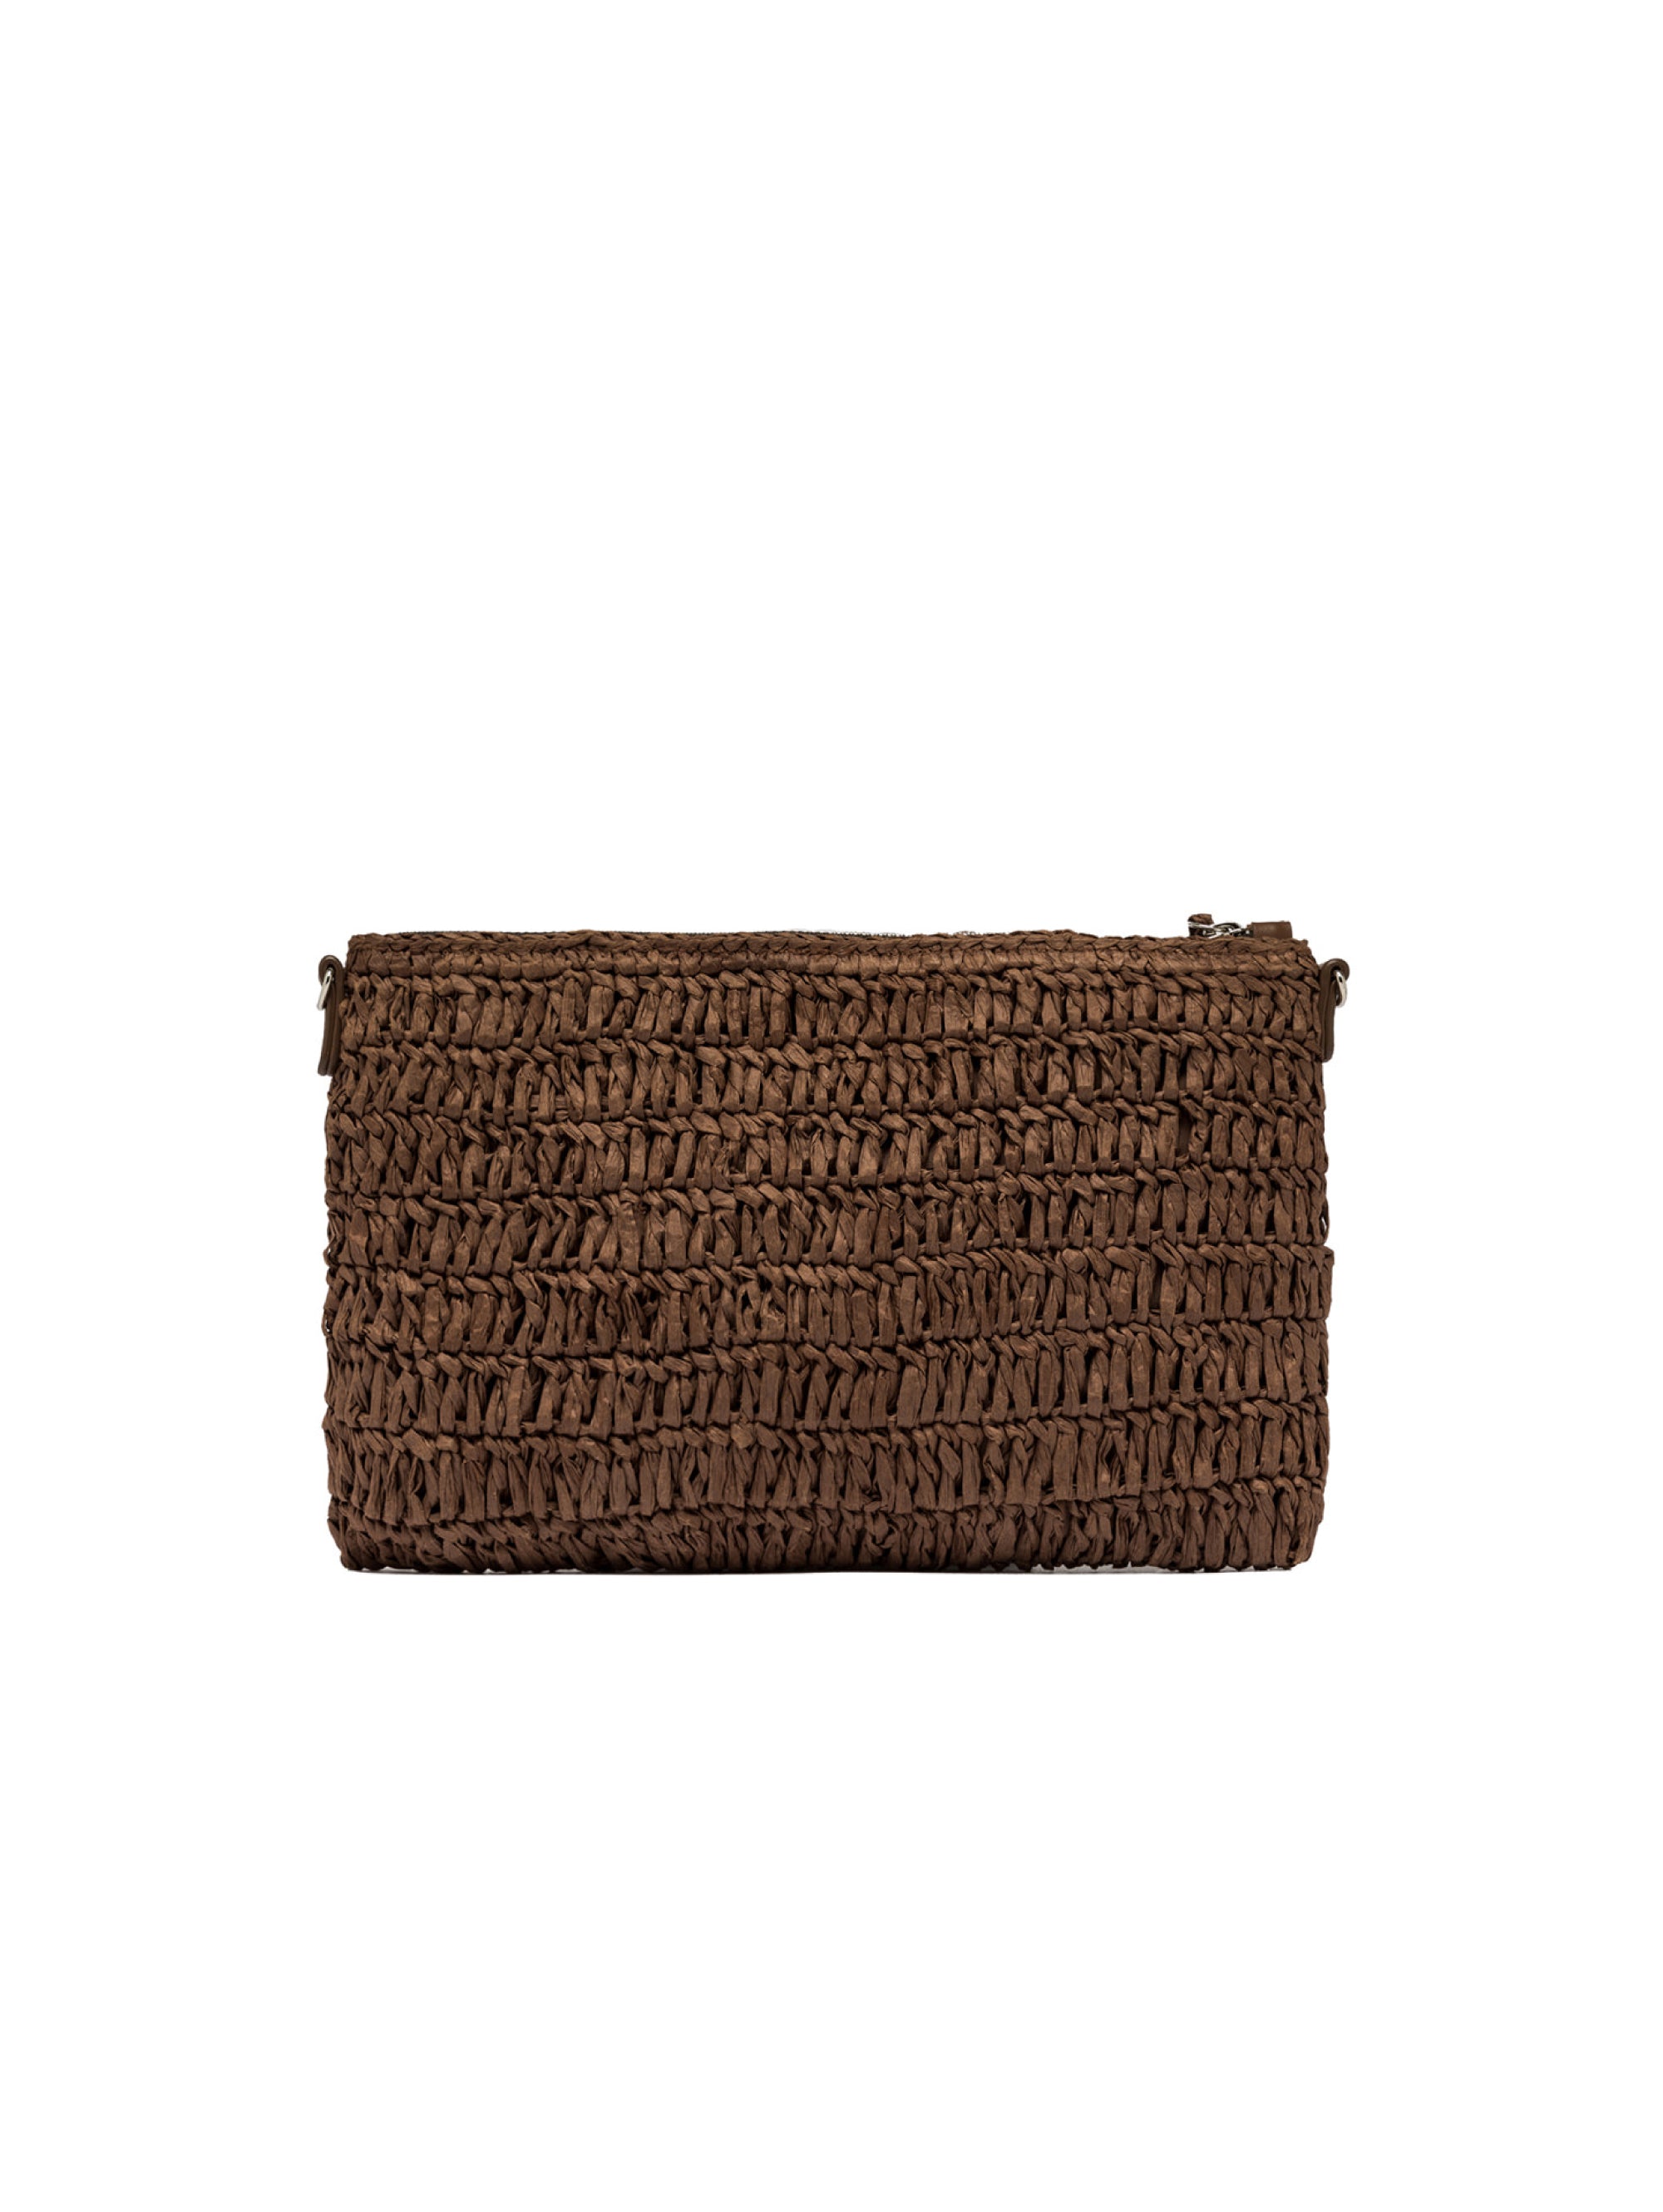 Straw clutch bag with coffee crochet workmanship